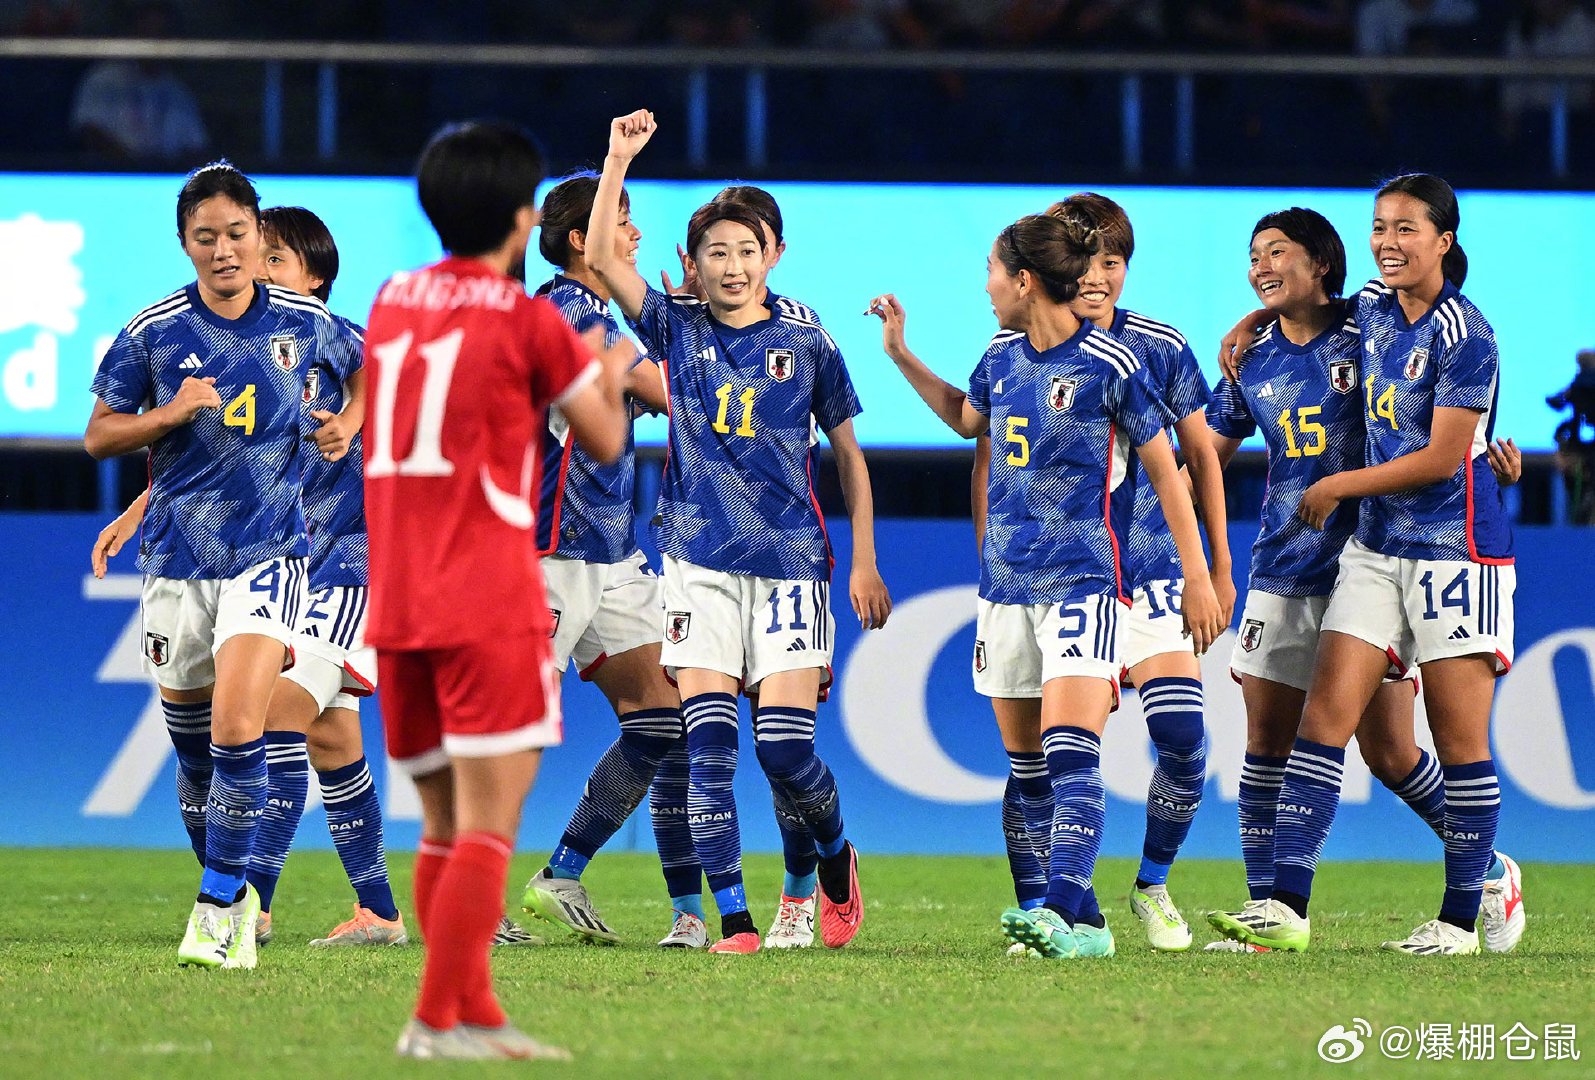 杭州亚运会 | 6分钟三球 日本女足4:1大胜朝鲜队收获冠军_日本队_比赛_新华社